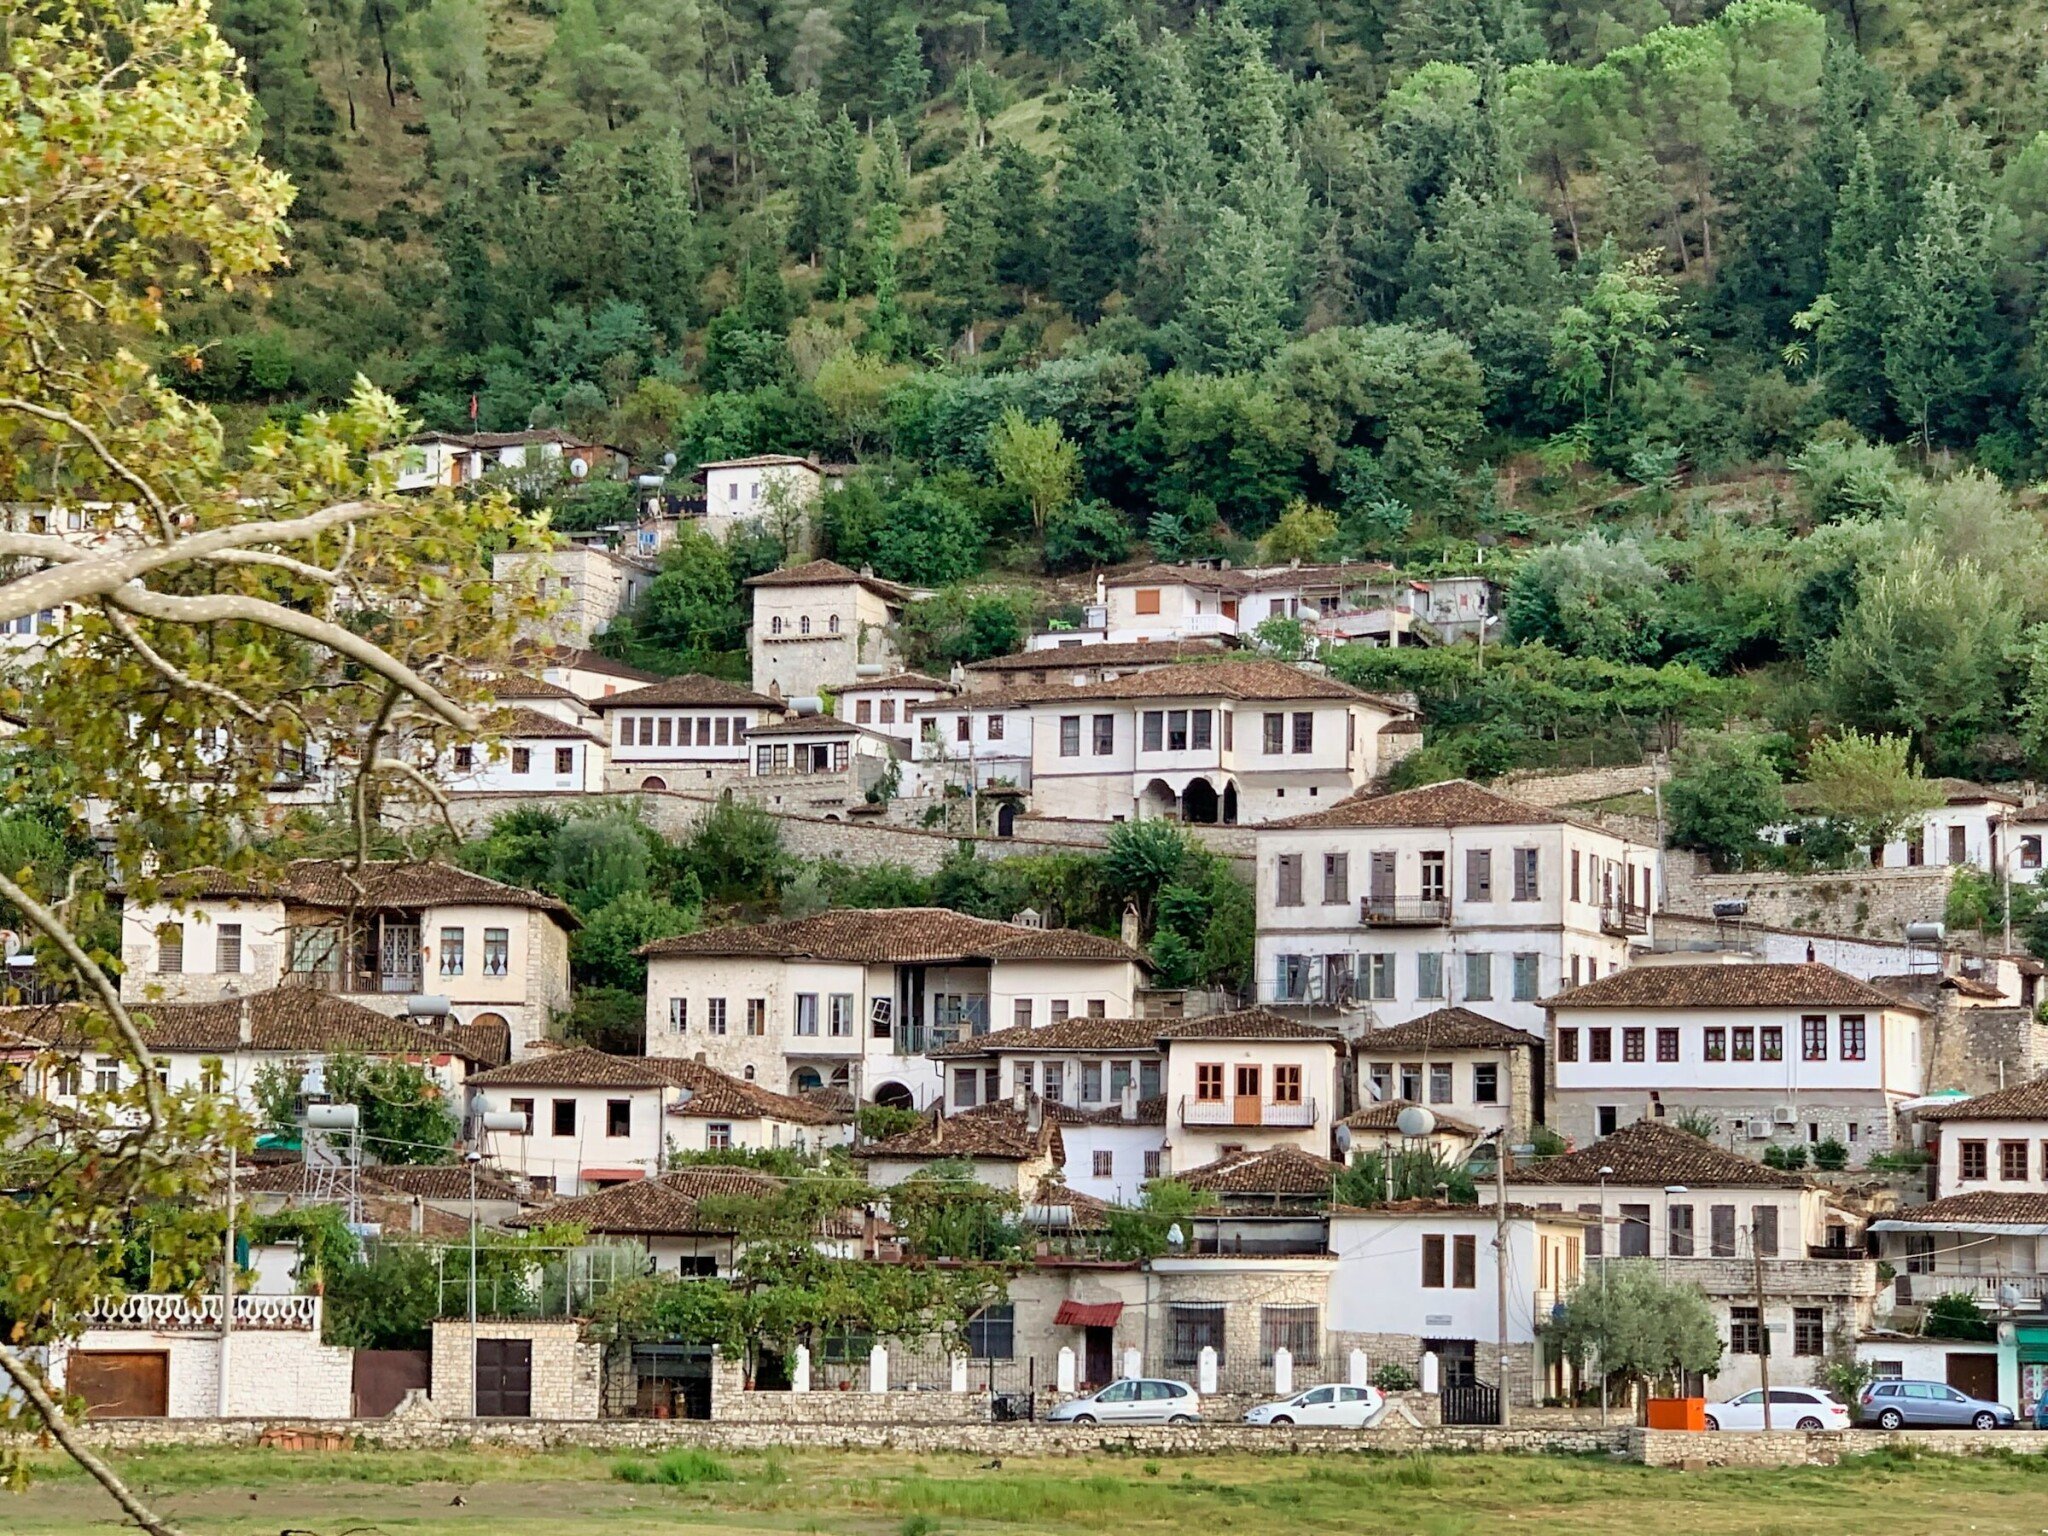 Albánie ještě nevyužila svůj potenciál. Na koupi nemovitosti je teď podle odborníků ideální čas